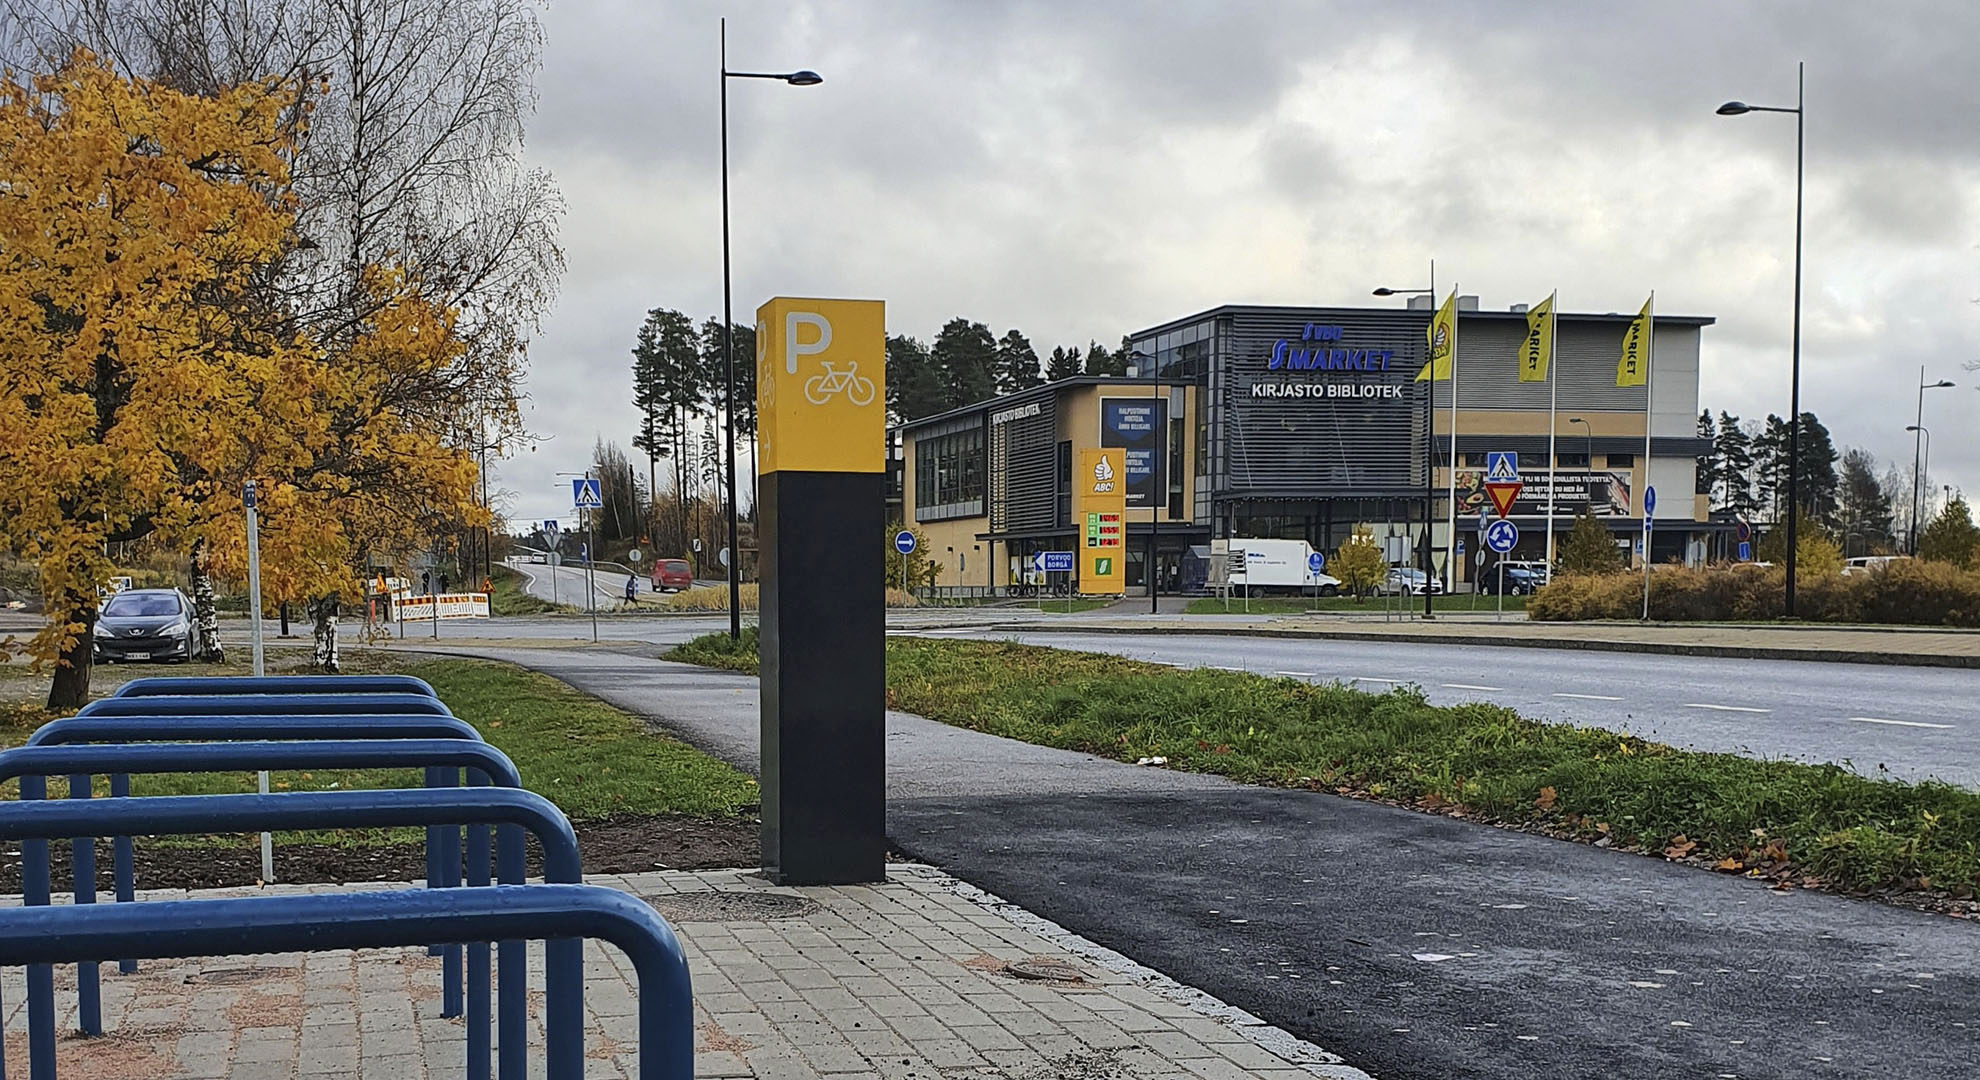 Anslutningsparkeringsplatser för cyklar vid gatan. En skylt med bokstav P och en bild på cykel. Bakom syns Söderkulla centrum.